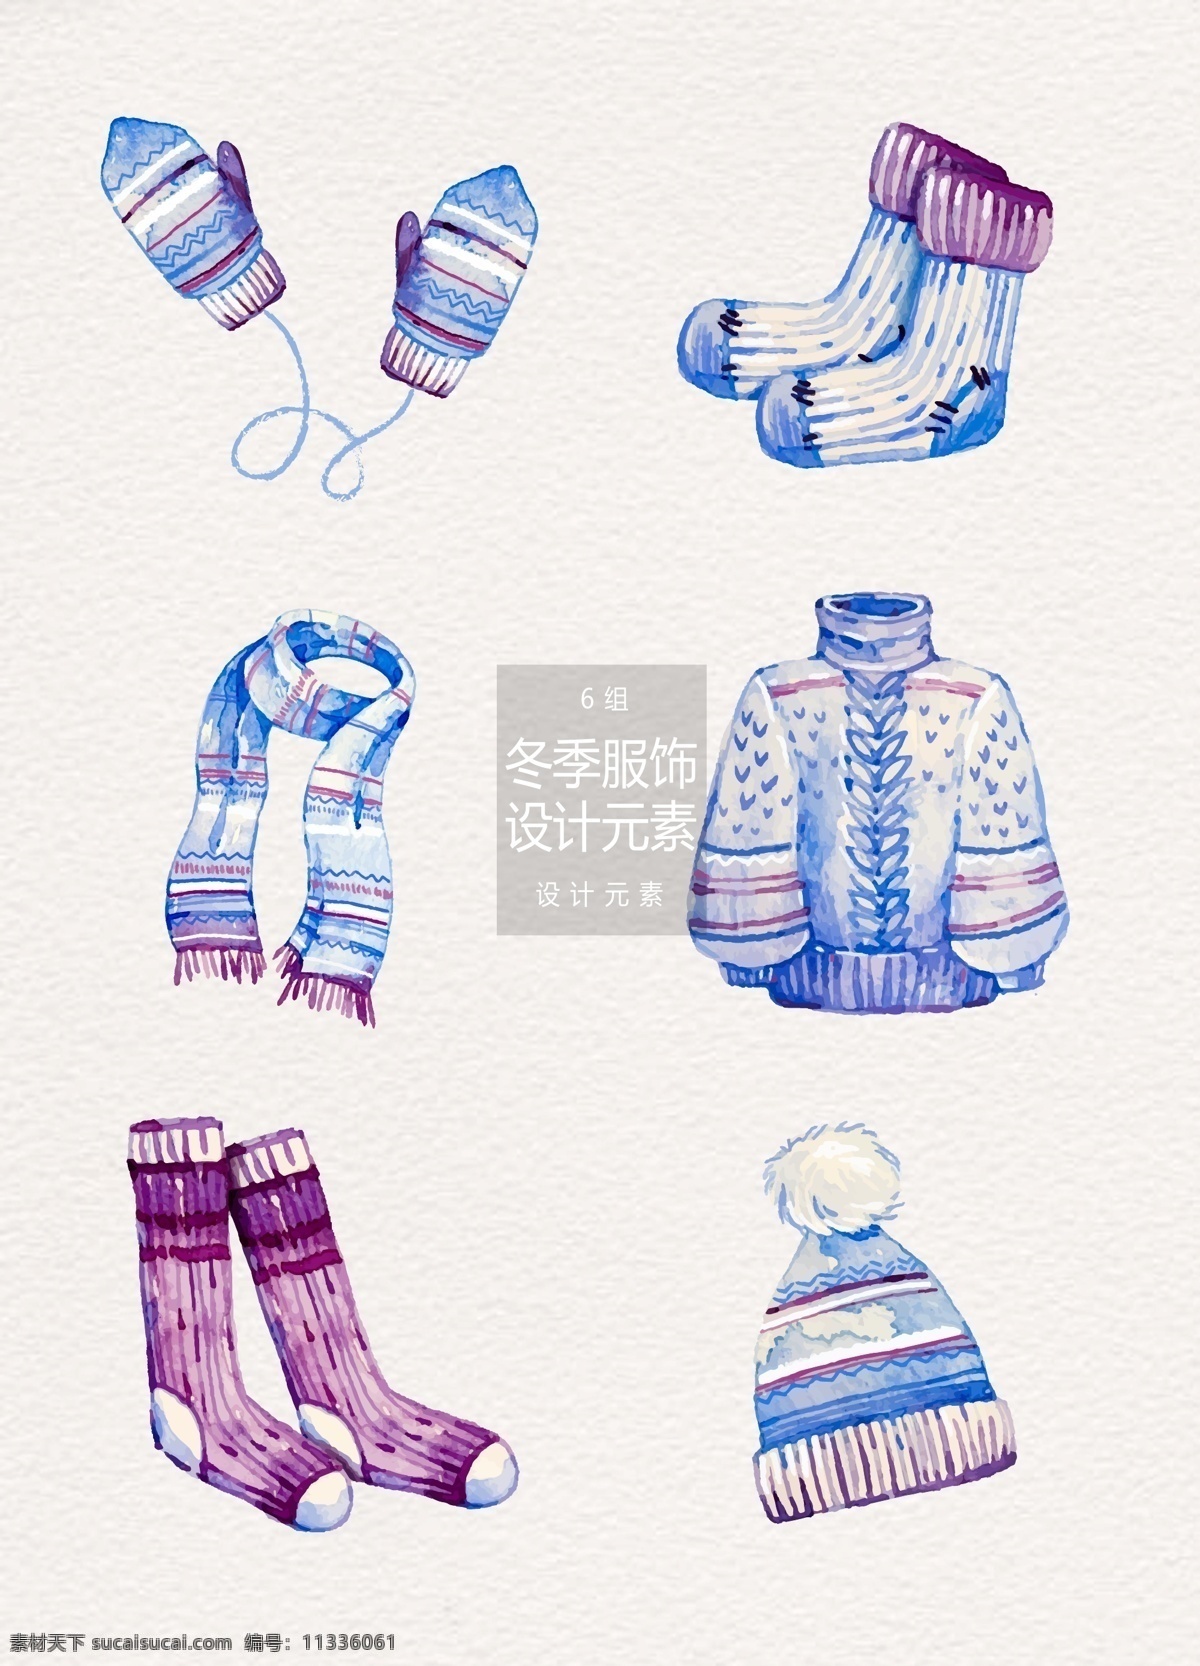 水彩 冬季 服饰 元素 衣服 唯美 冬天 帽子 设计元素 冬季服饰 水彩服饰 紫蓝色 手套 袜子 毛衣